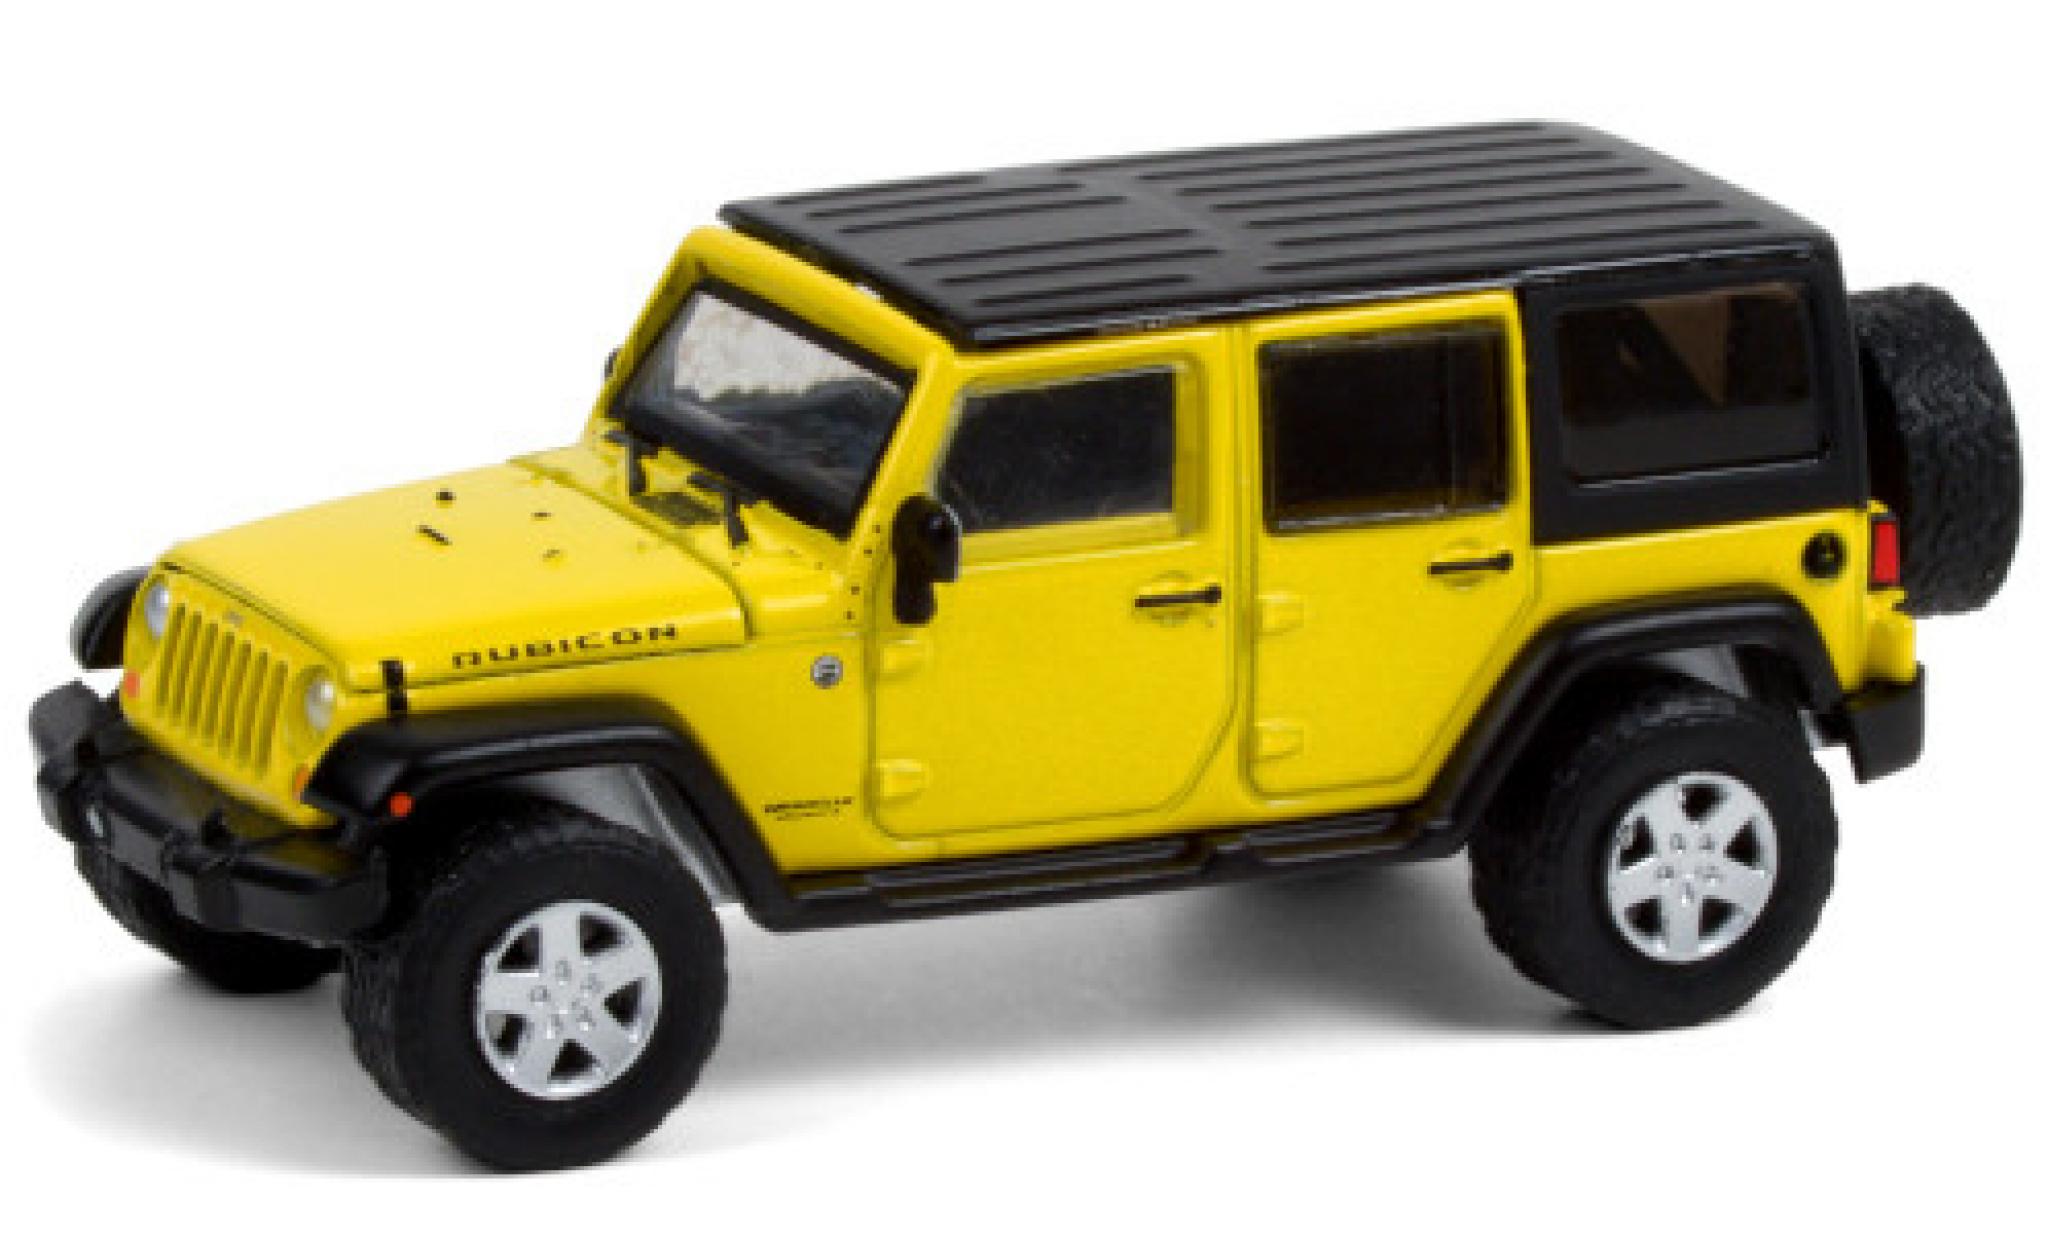 modellino-in-miniatura-jeep-wrangler-1-64-greenlight-rubicon-giallo